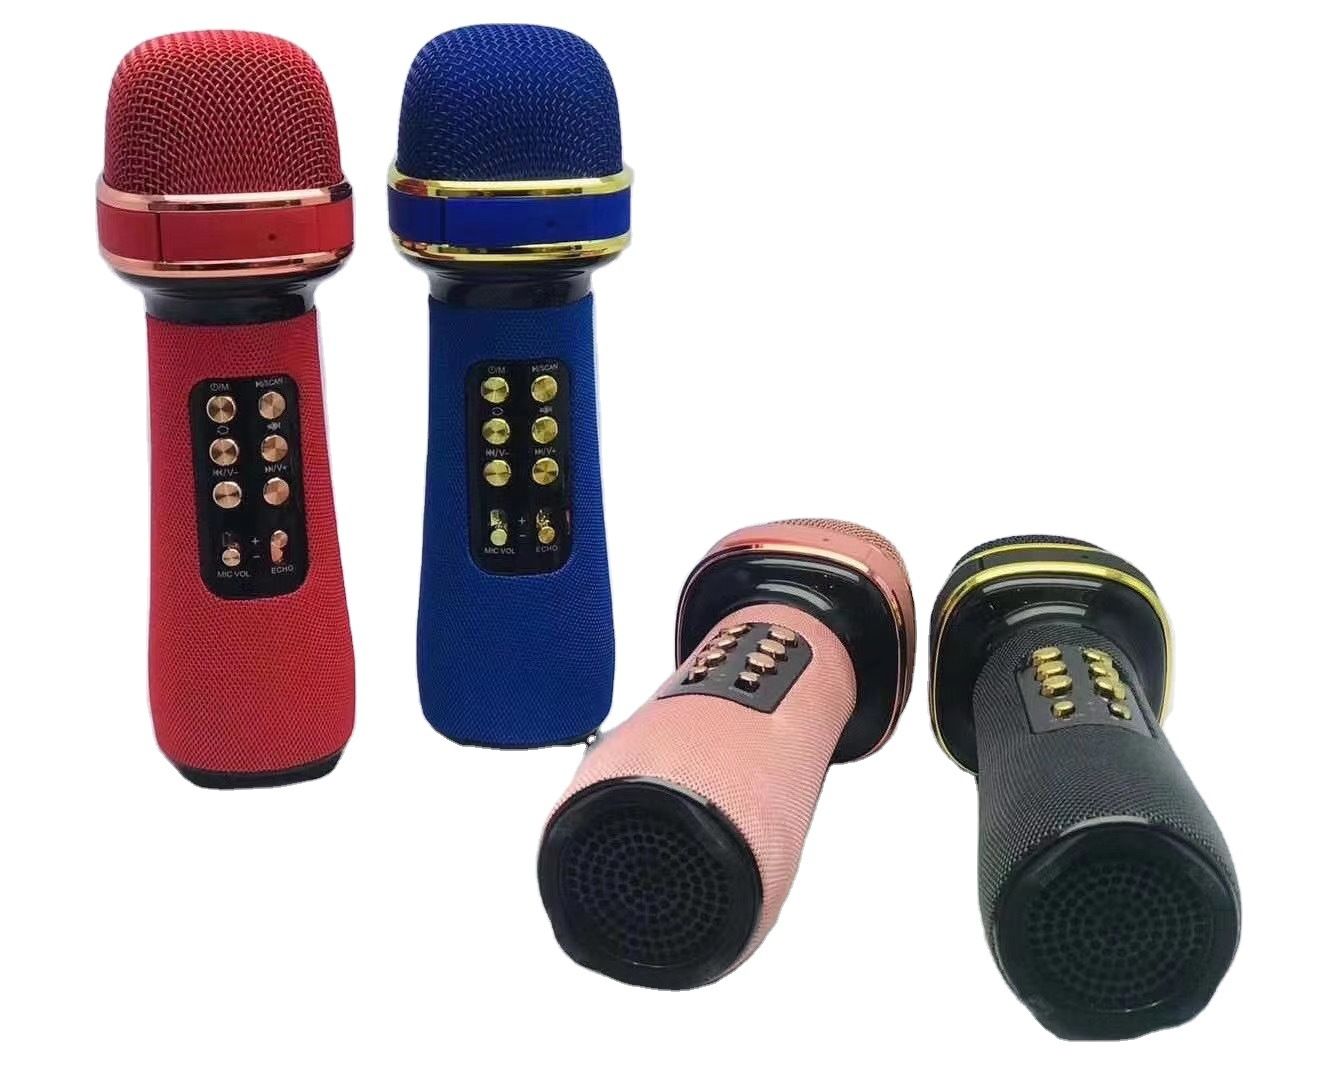 WS-898 Bluetooth Handheld Microfono Karaoke Doppio altoparlante Mic Canto per iOS Android Smart TV System supporta il lettore musicale MP3 FM TF MP3